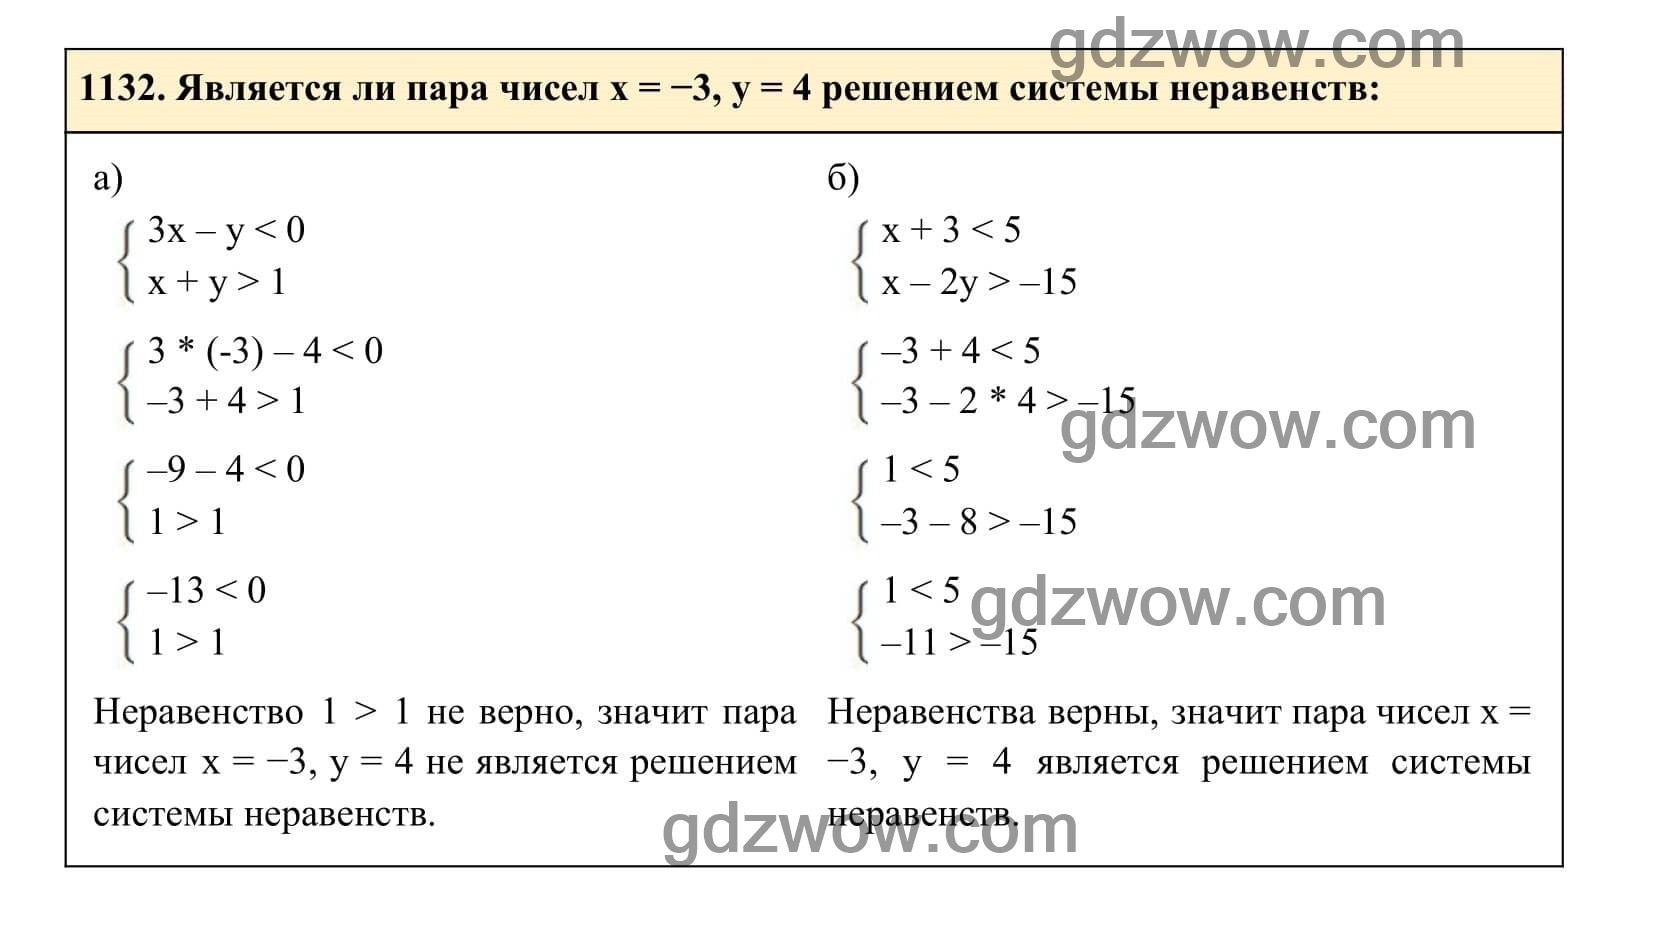 Упражнение 1132 - ГДЗ по Алгебре 7 класс Учебник Макарычев (решебник) - GDZwow